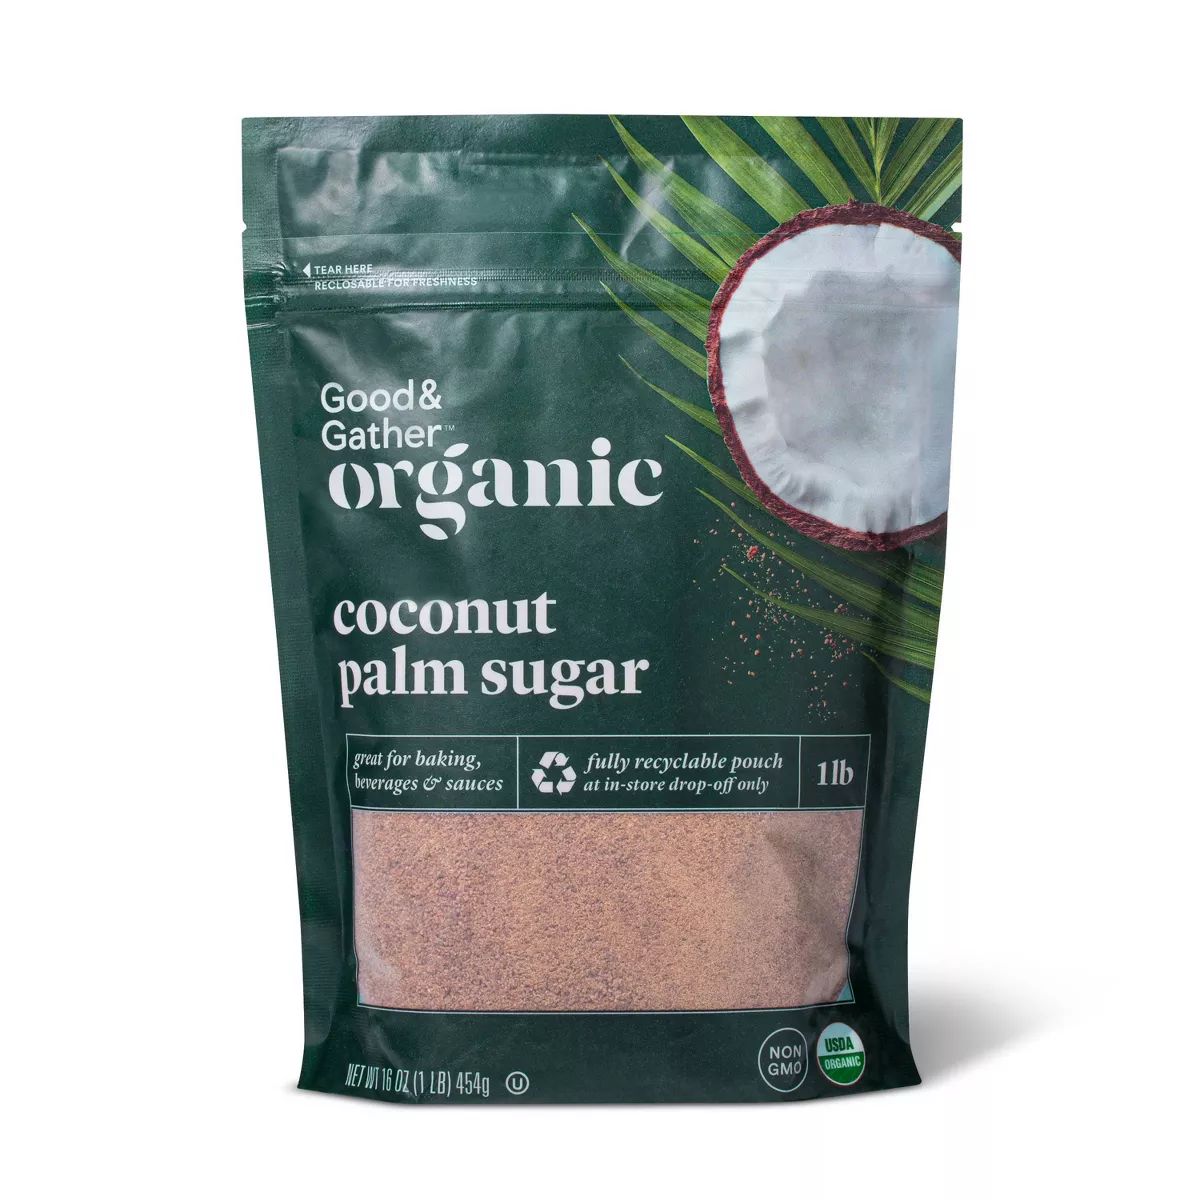 Organic Coconut Palm Sugar - 16oz - Good & Gather™ | Target